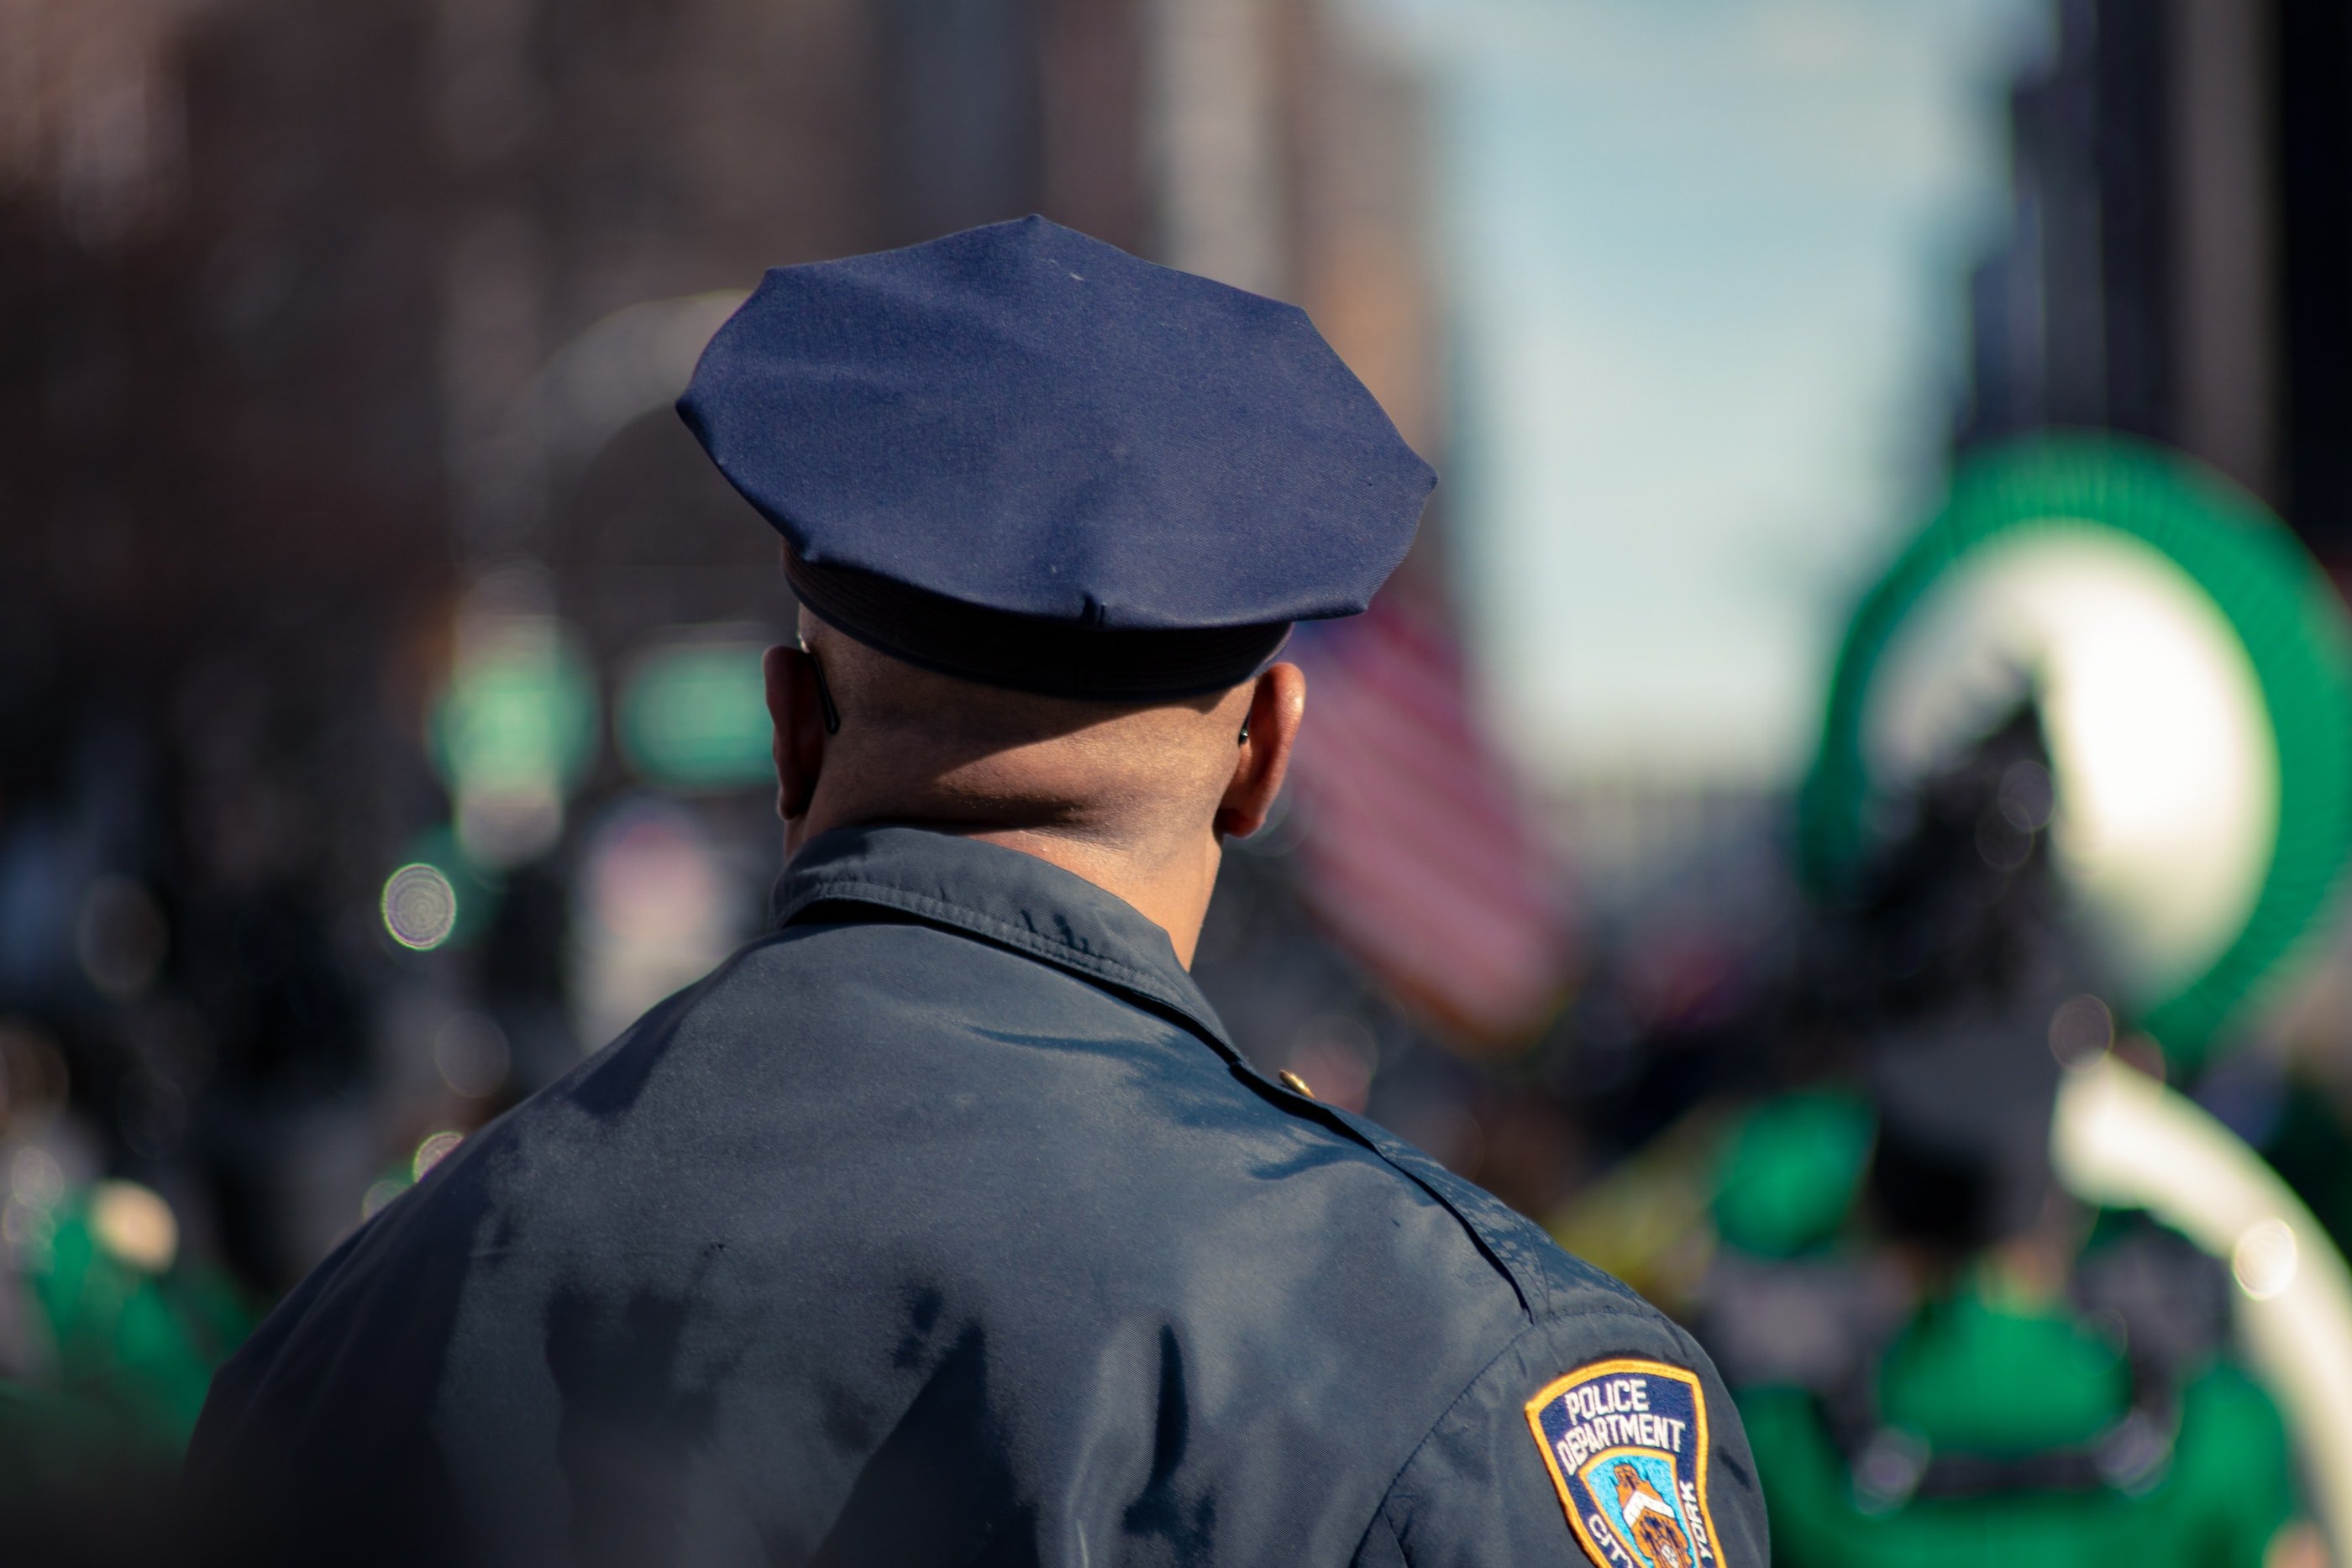 Oficial de policía. | Foto: Unsplash